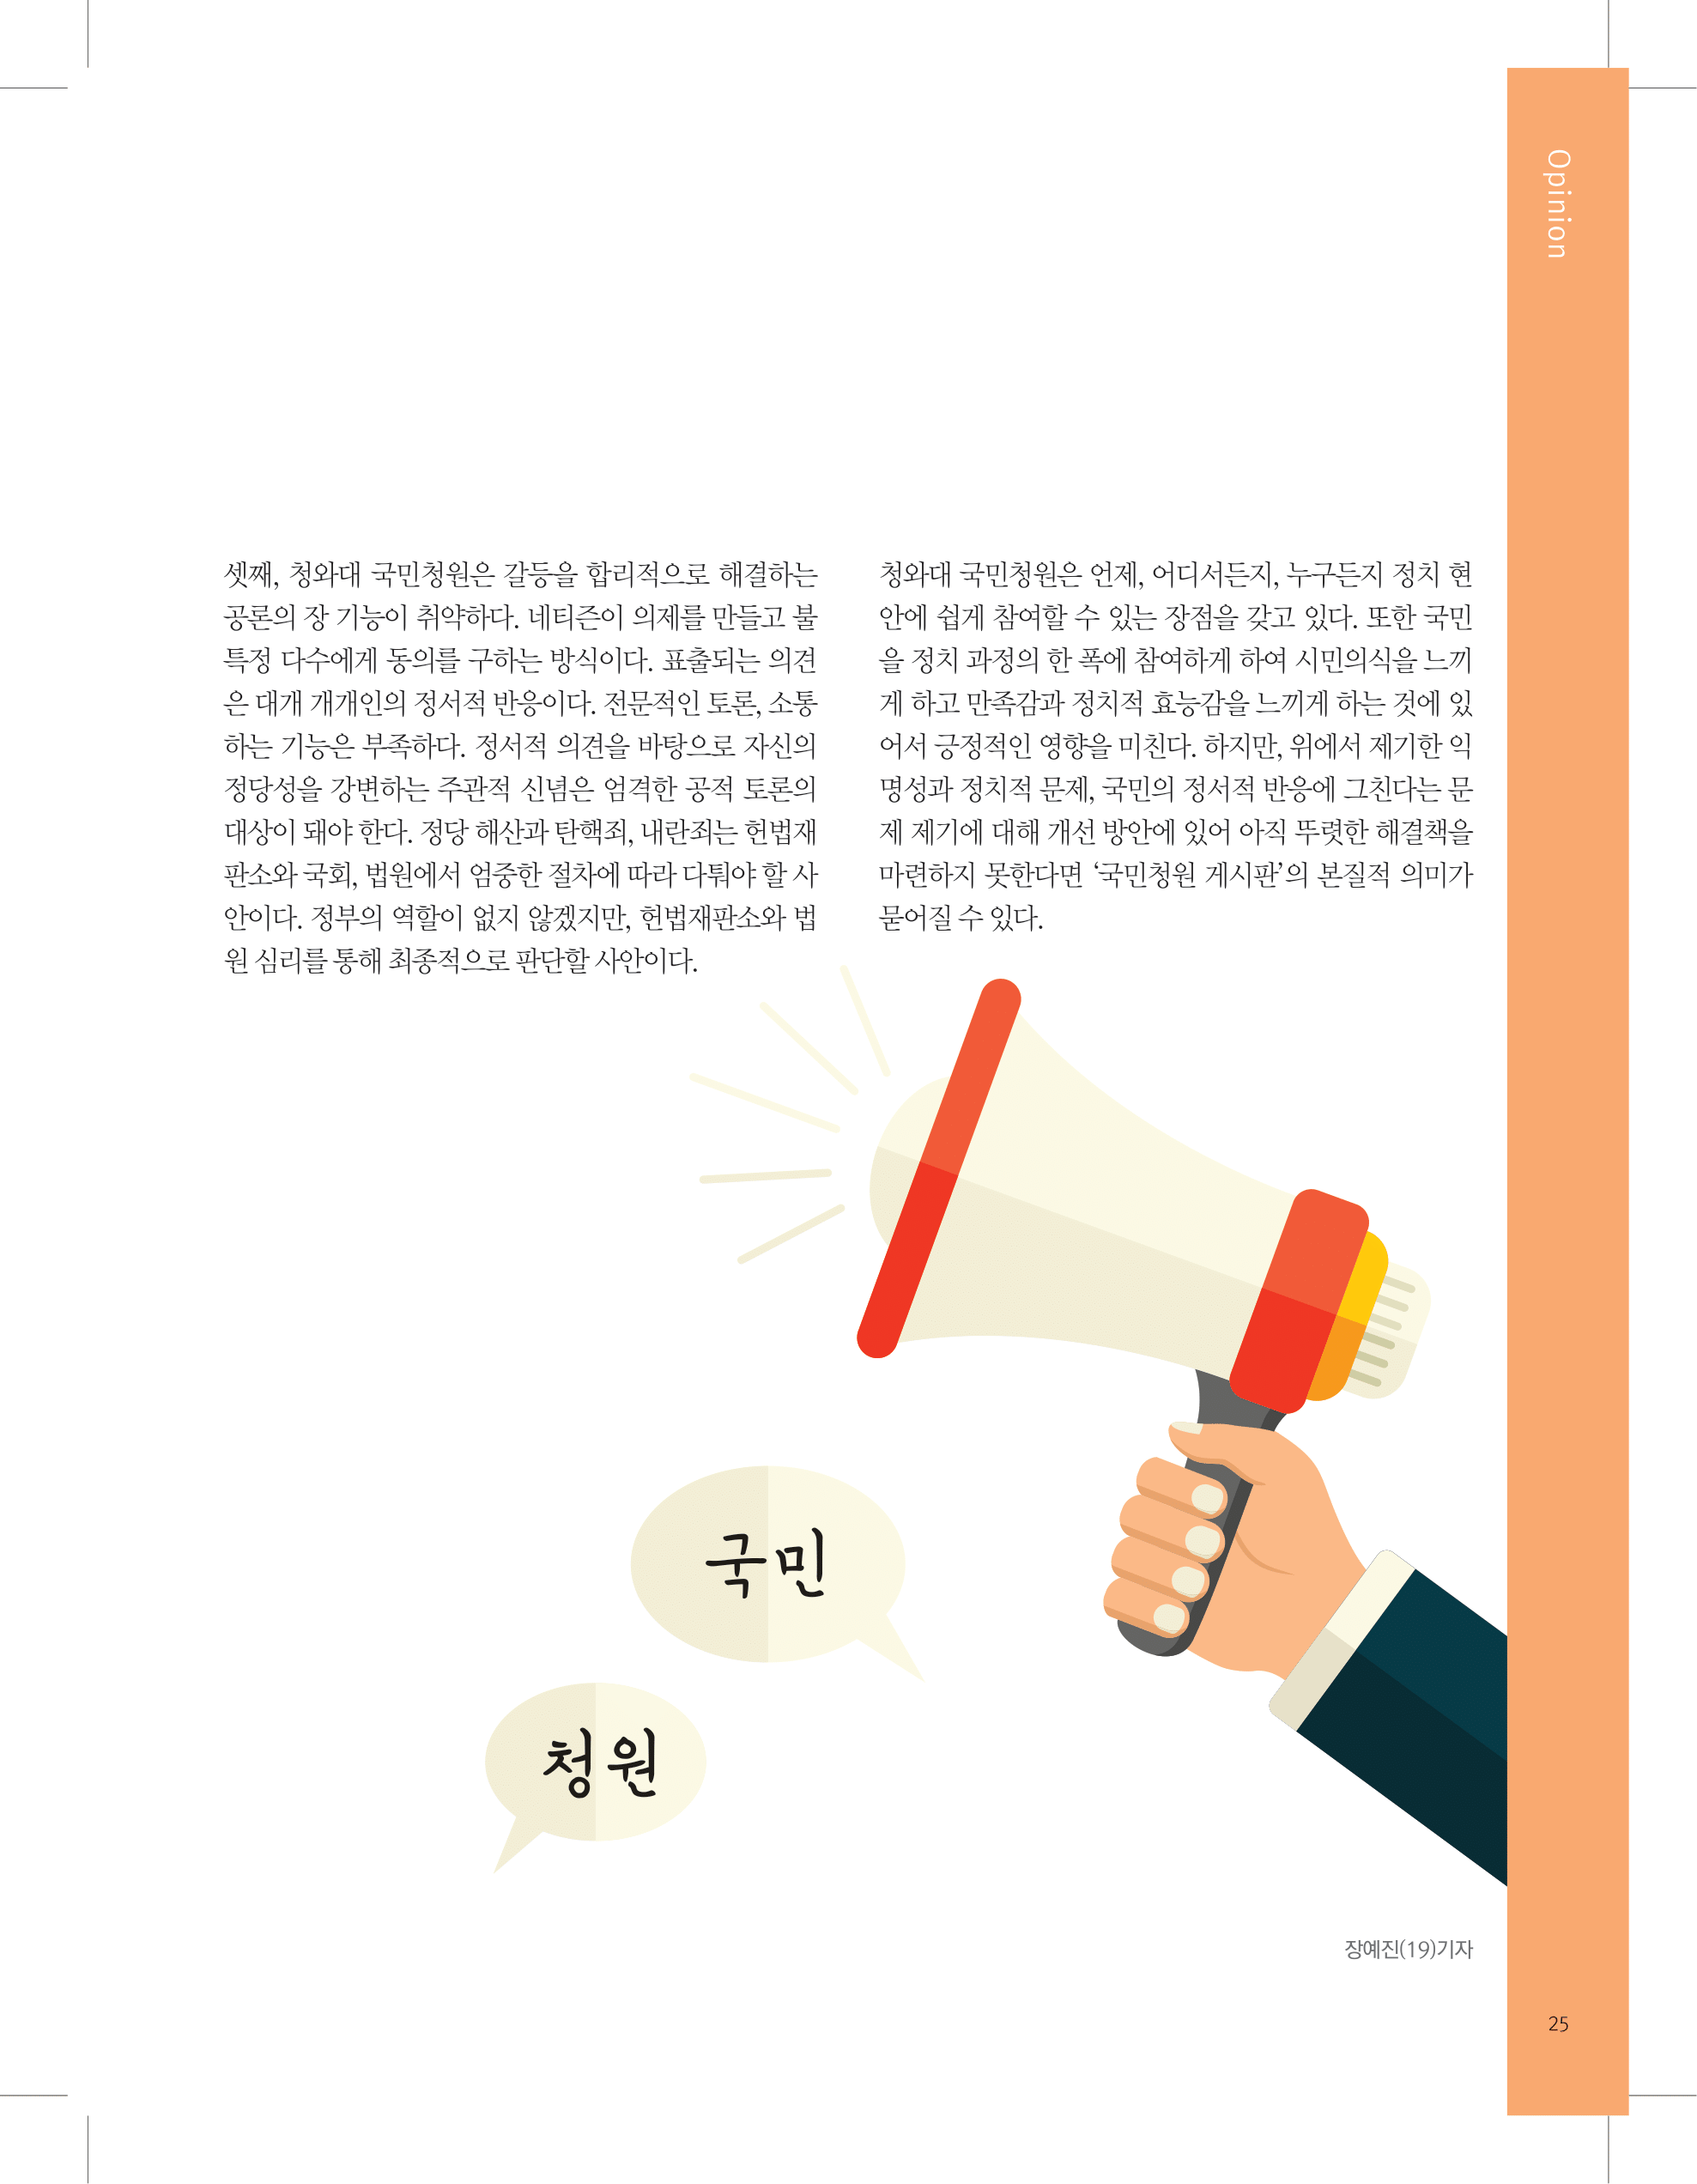 뜻새김 신문 73호 25